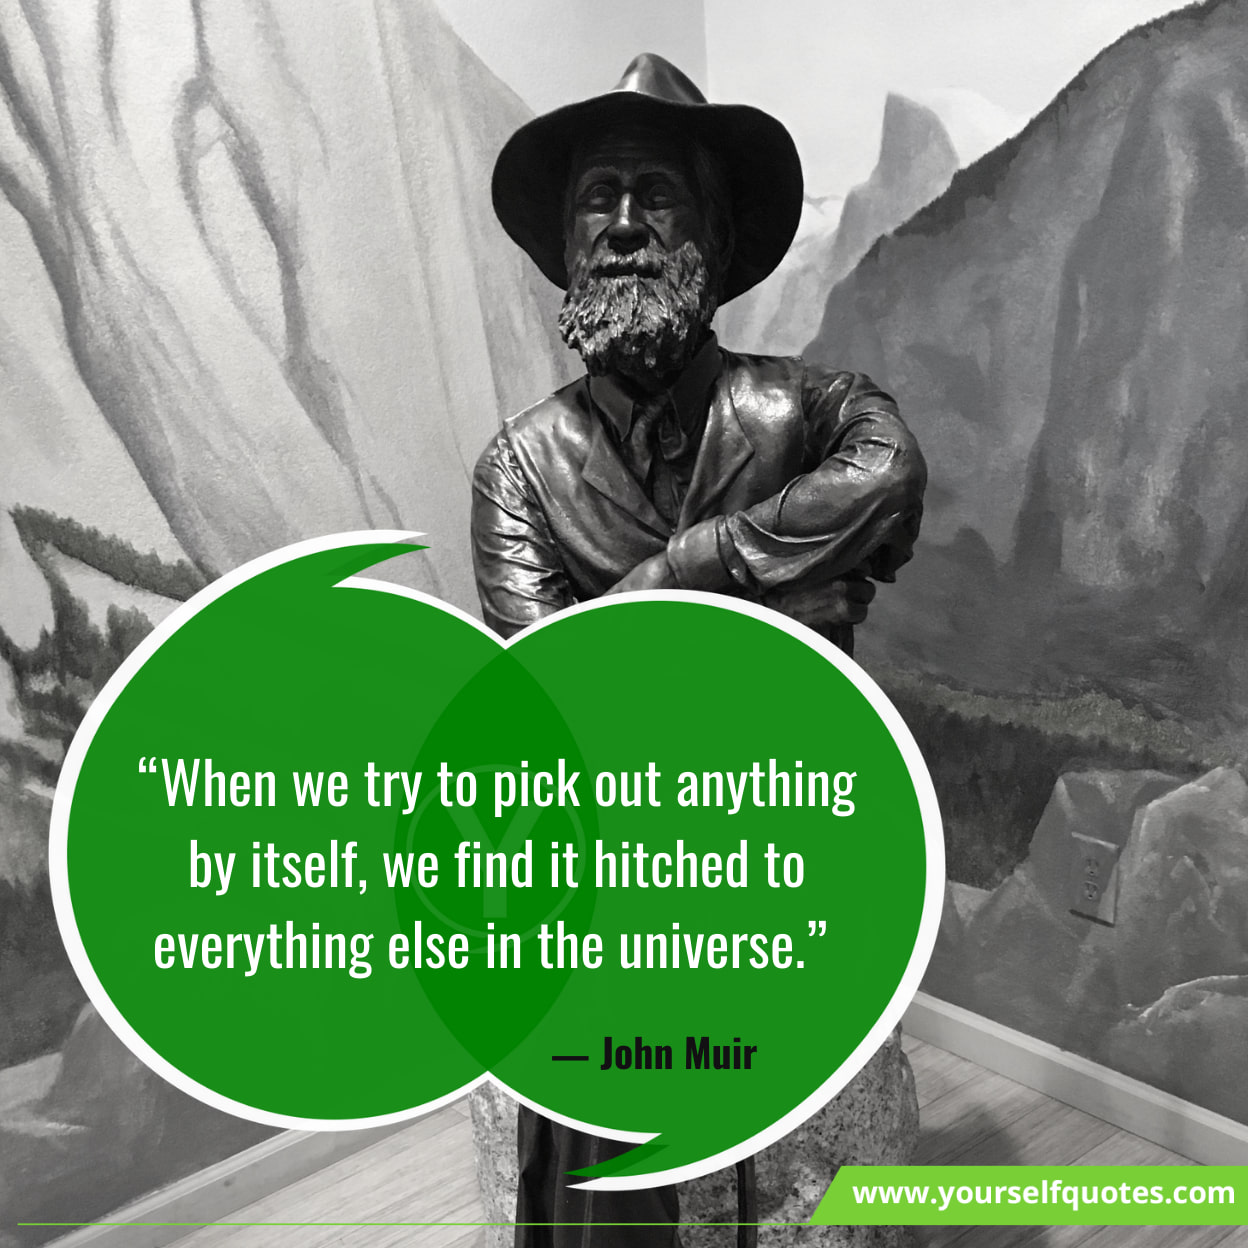 Inspirational Quotes of John Muir